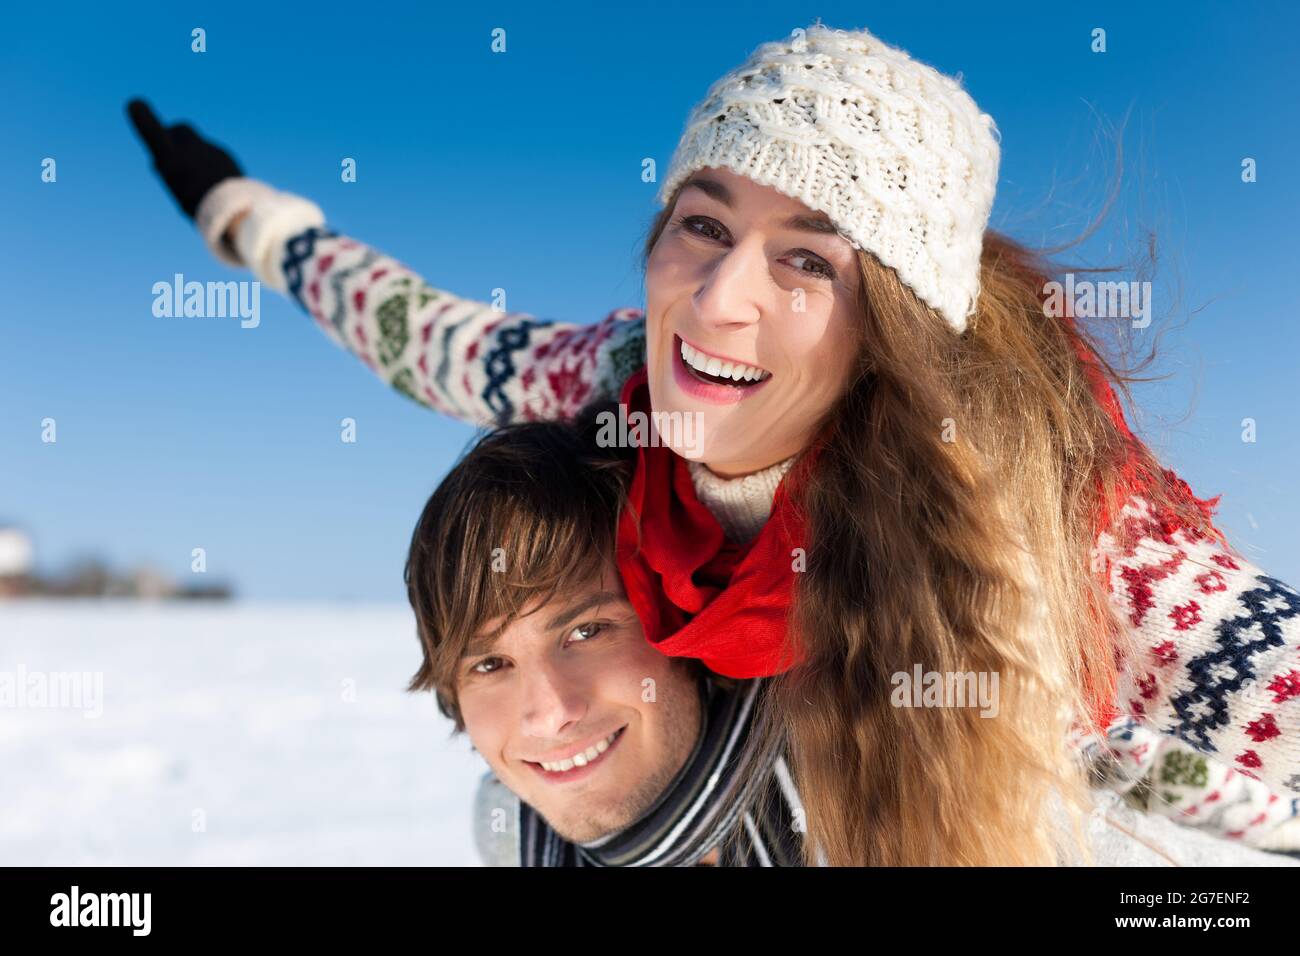 Coppia - uomo e donna - avente una passeggiata invernale che abbraccia ogni altro Foto Stock